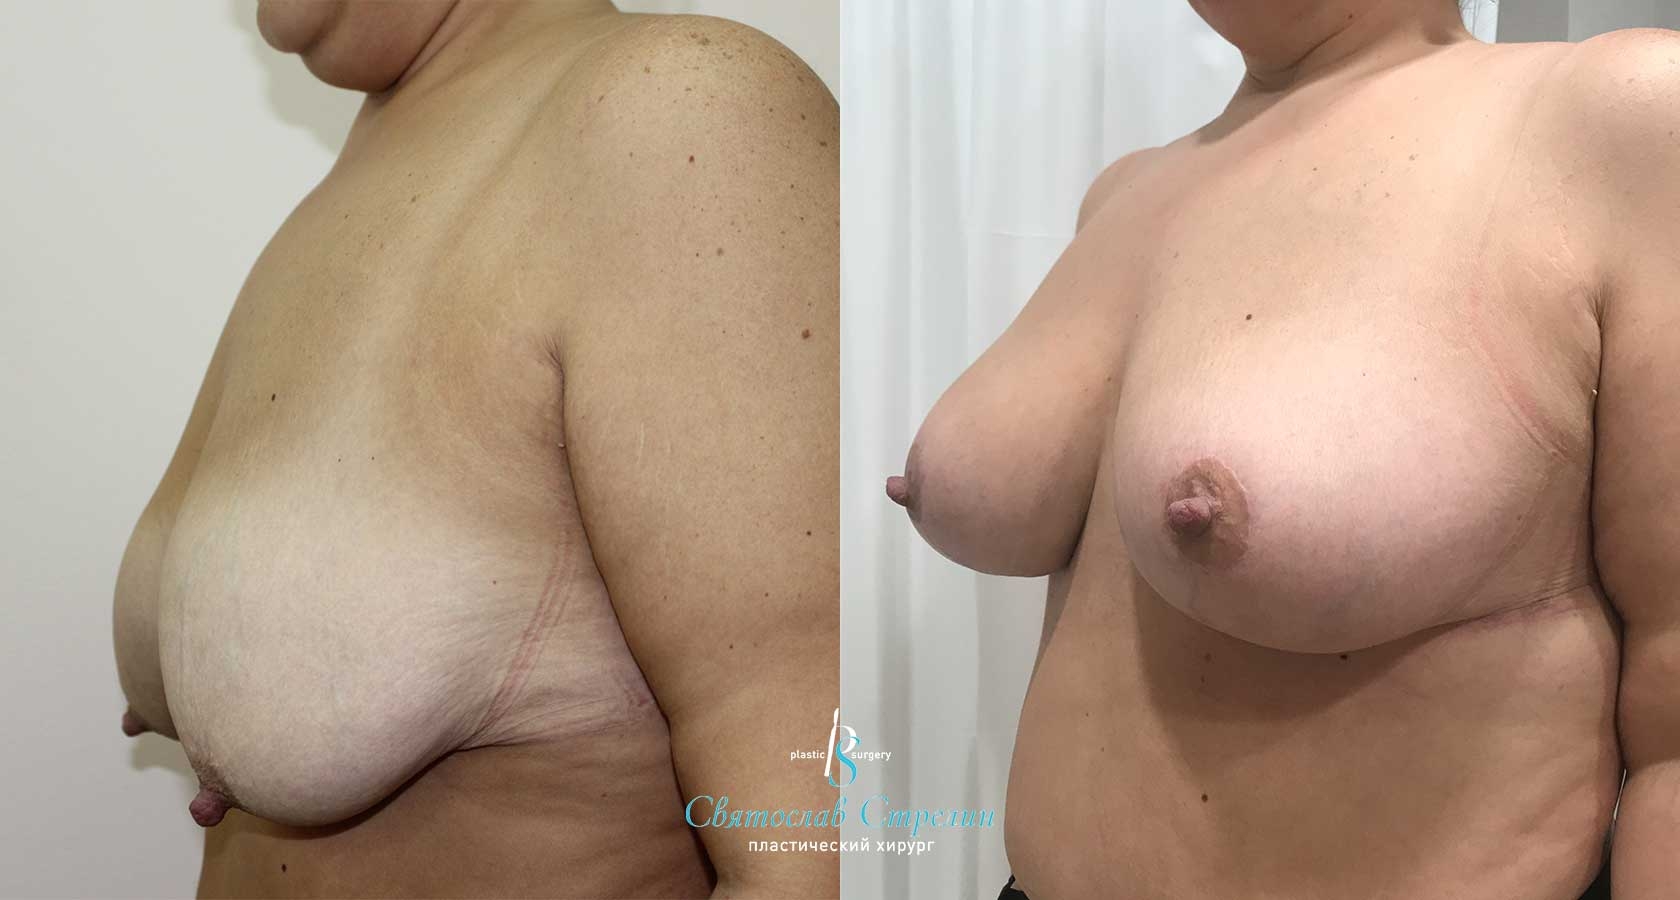 Подтяжка груди, 4 месяца после операции